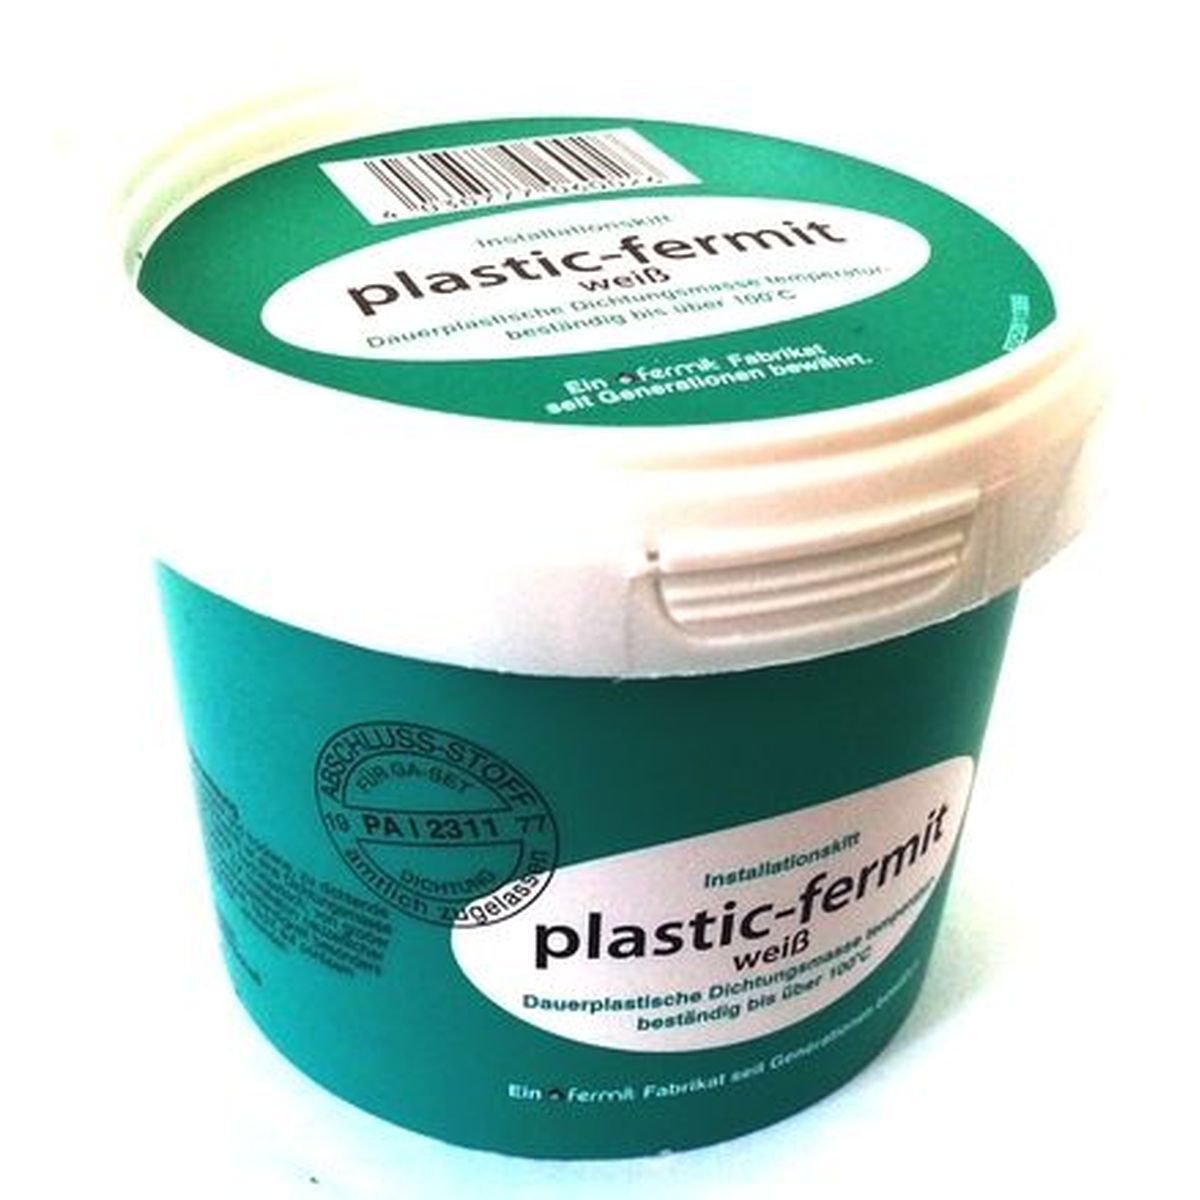 Plastic-Fermit 500g 